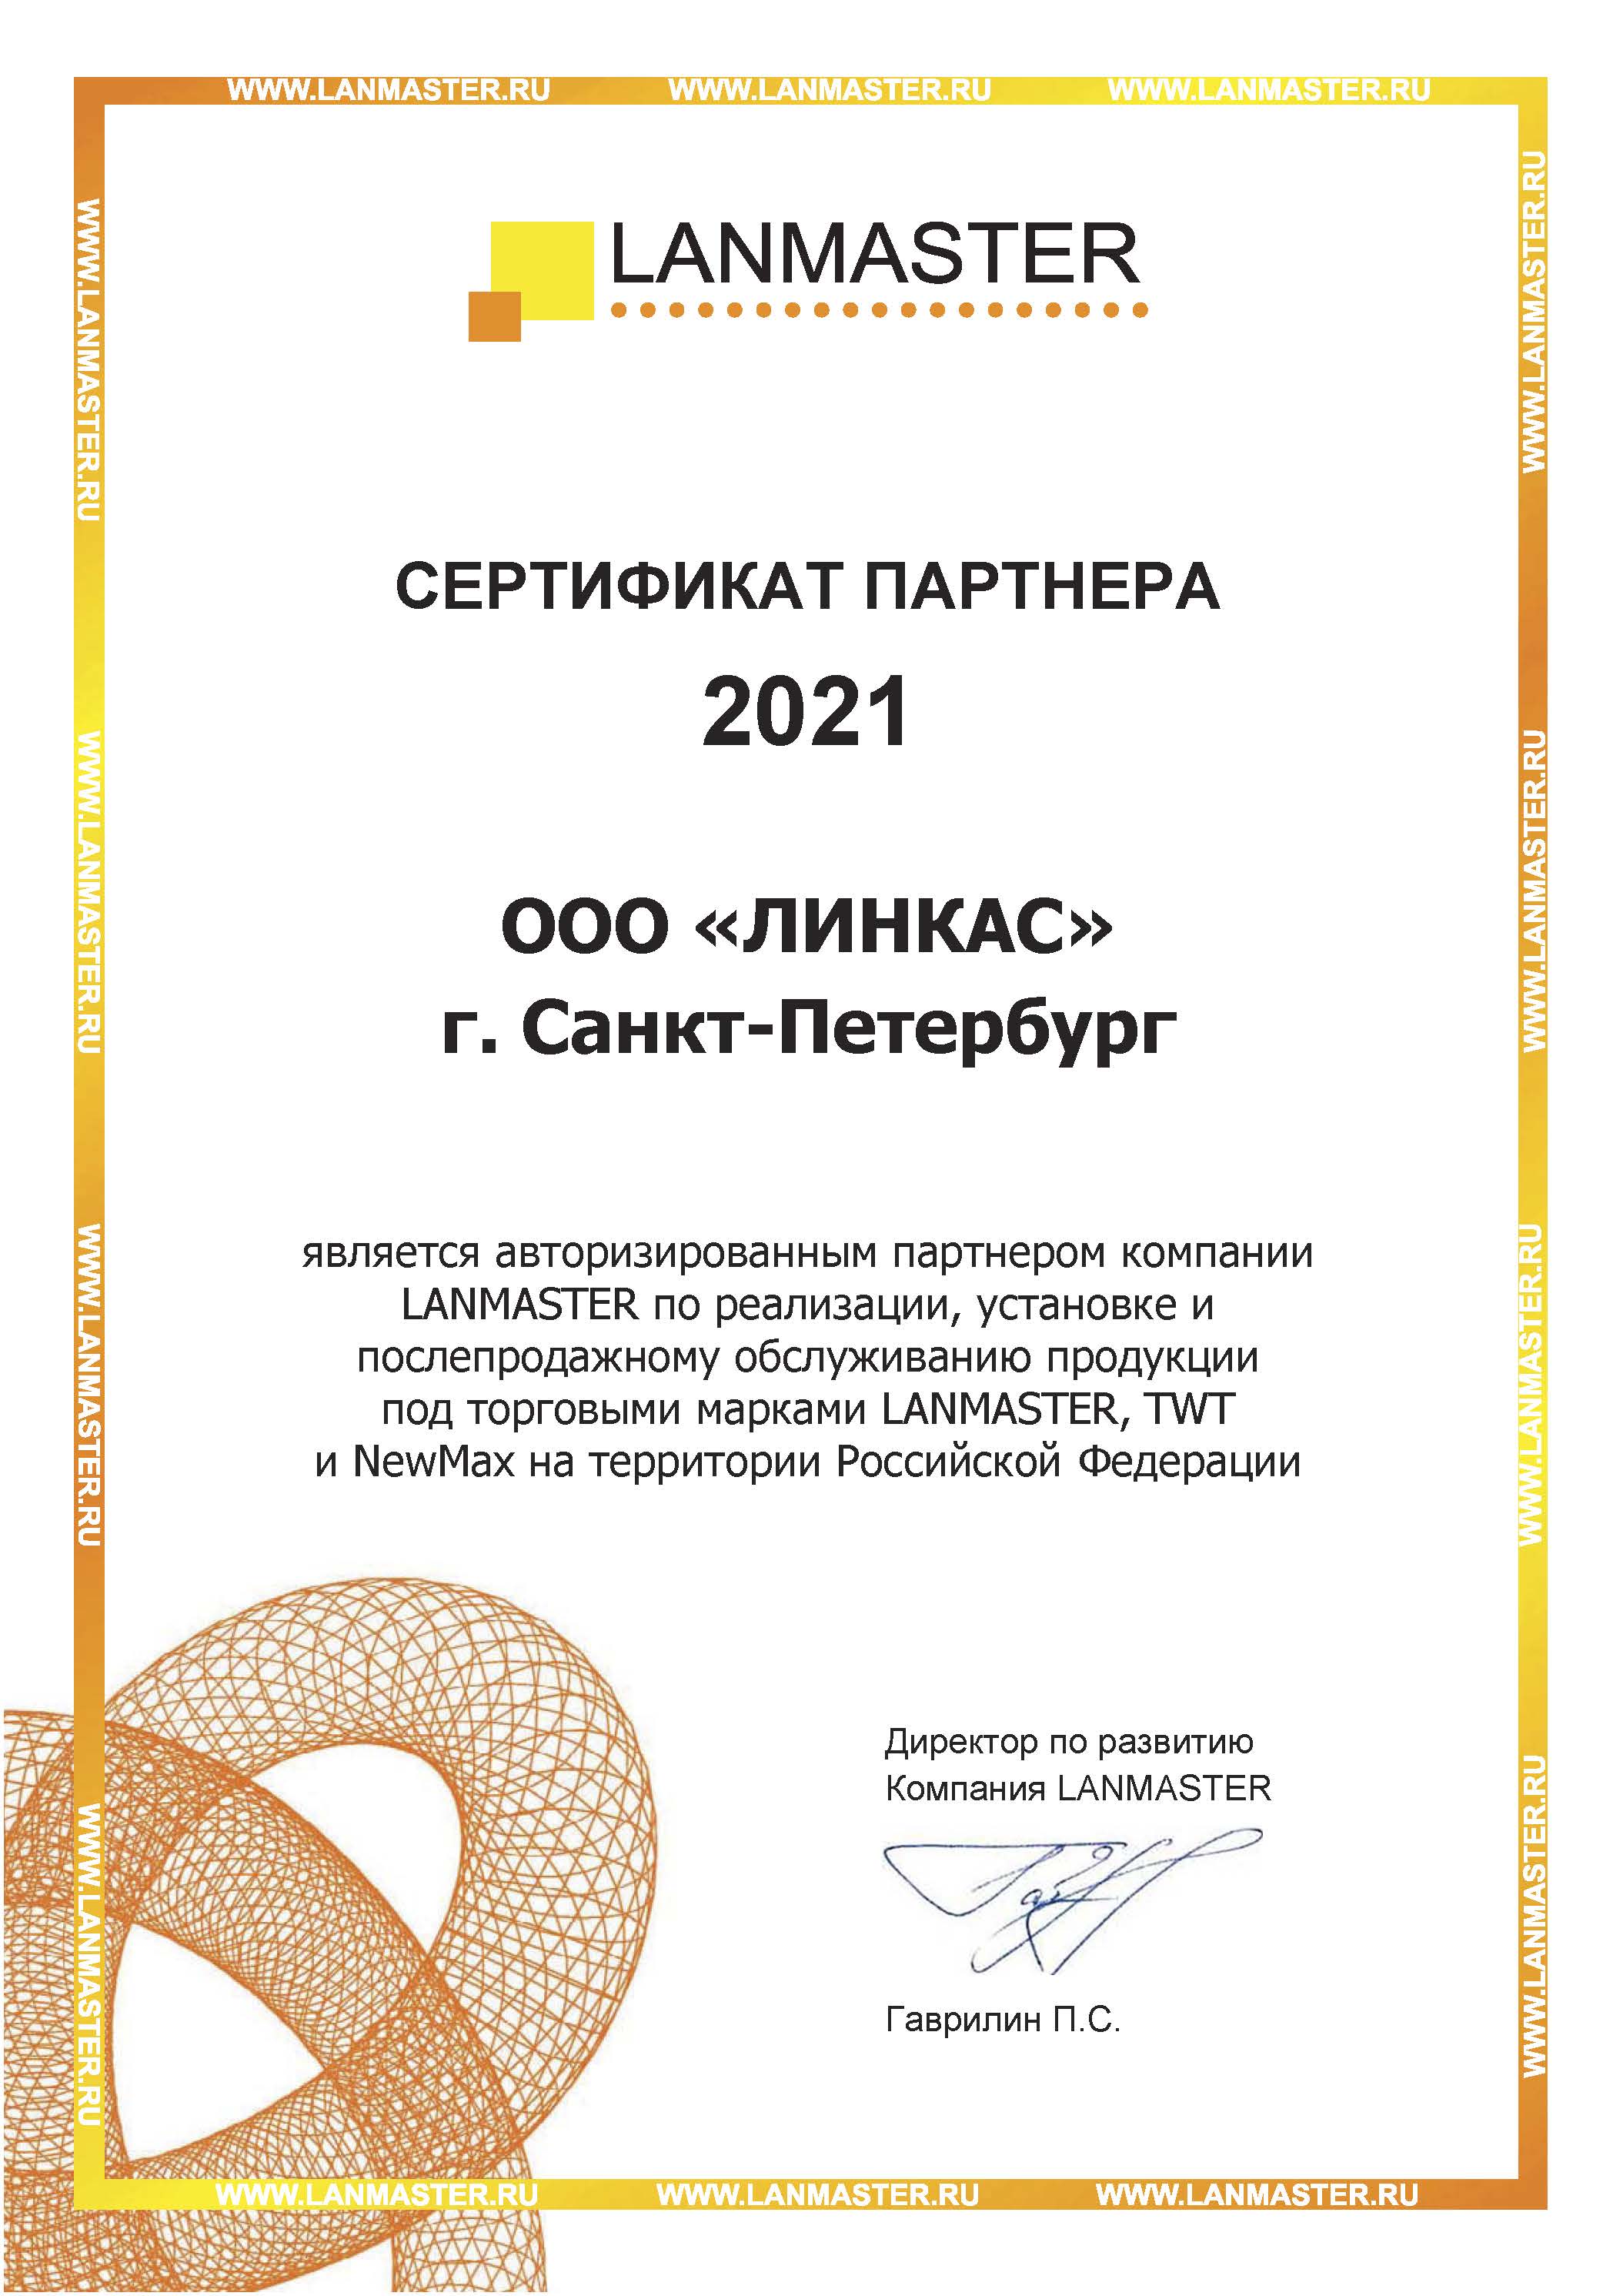 Сертификат партнера - LANMASTER